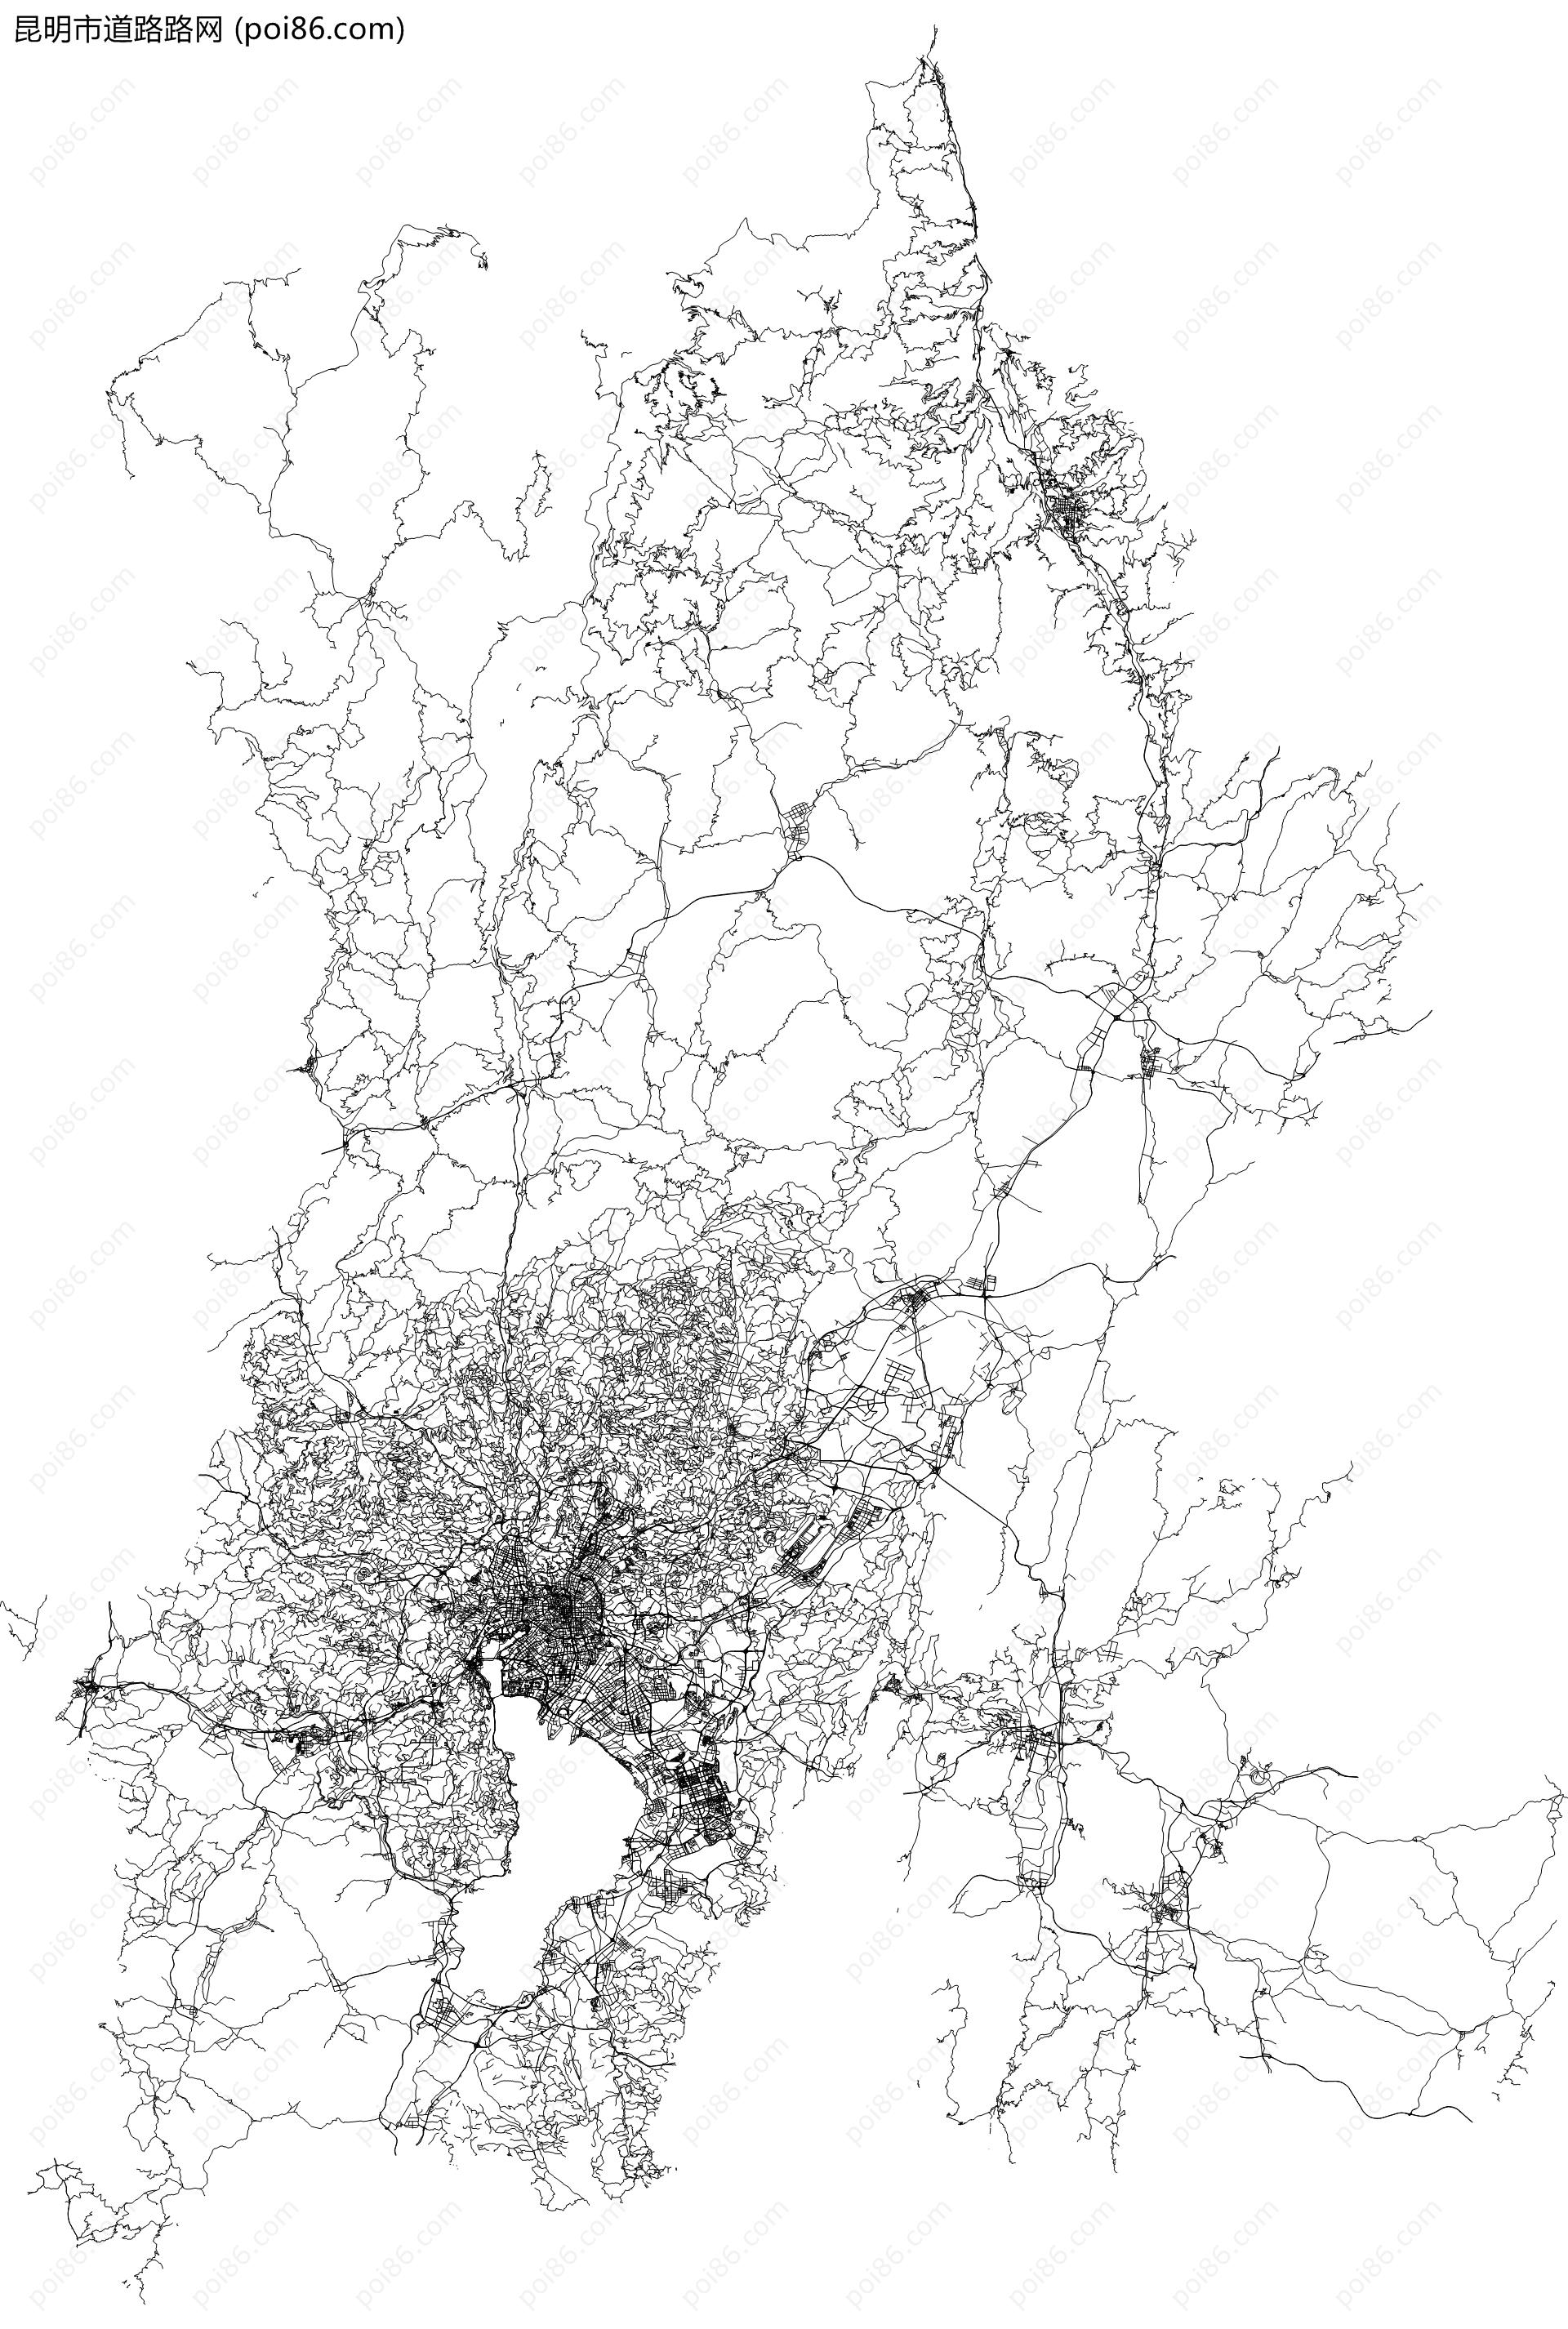 昆明市道路路网地图